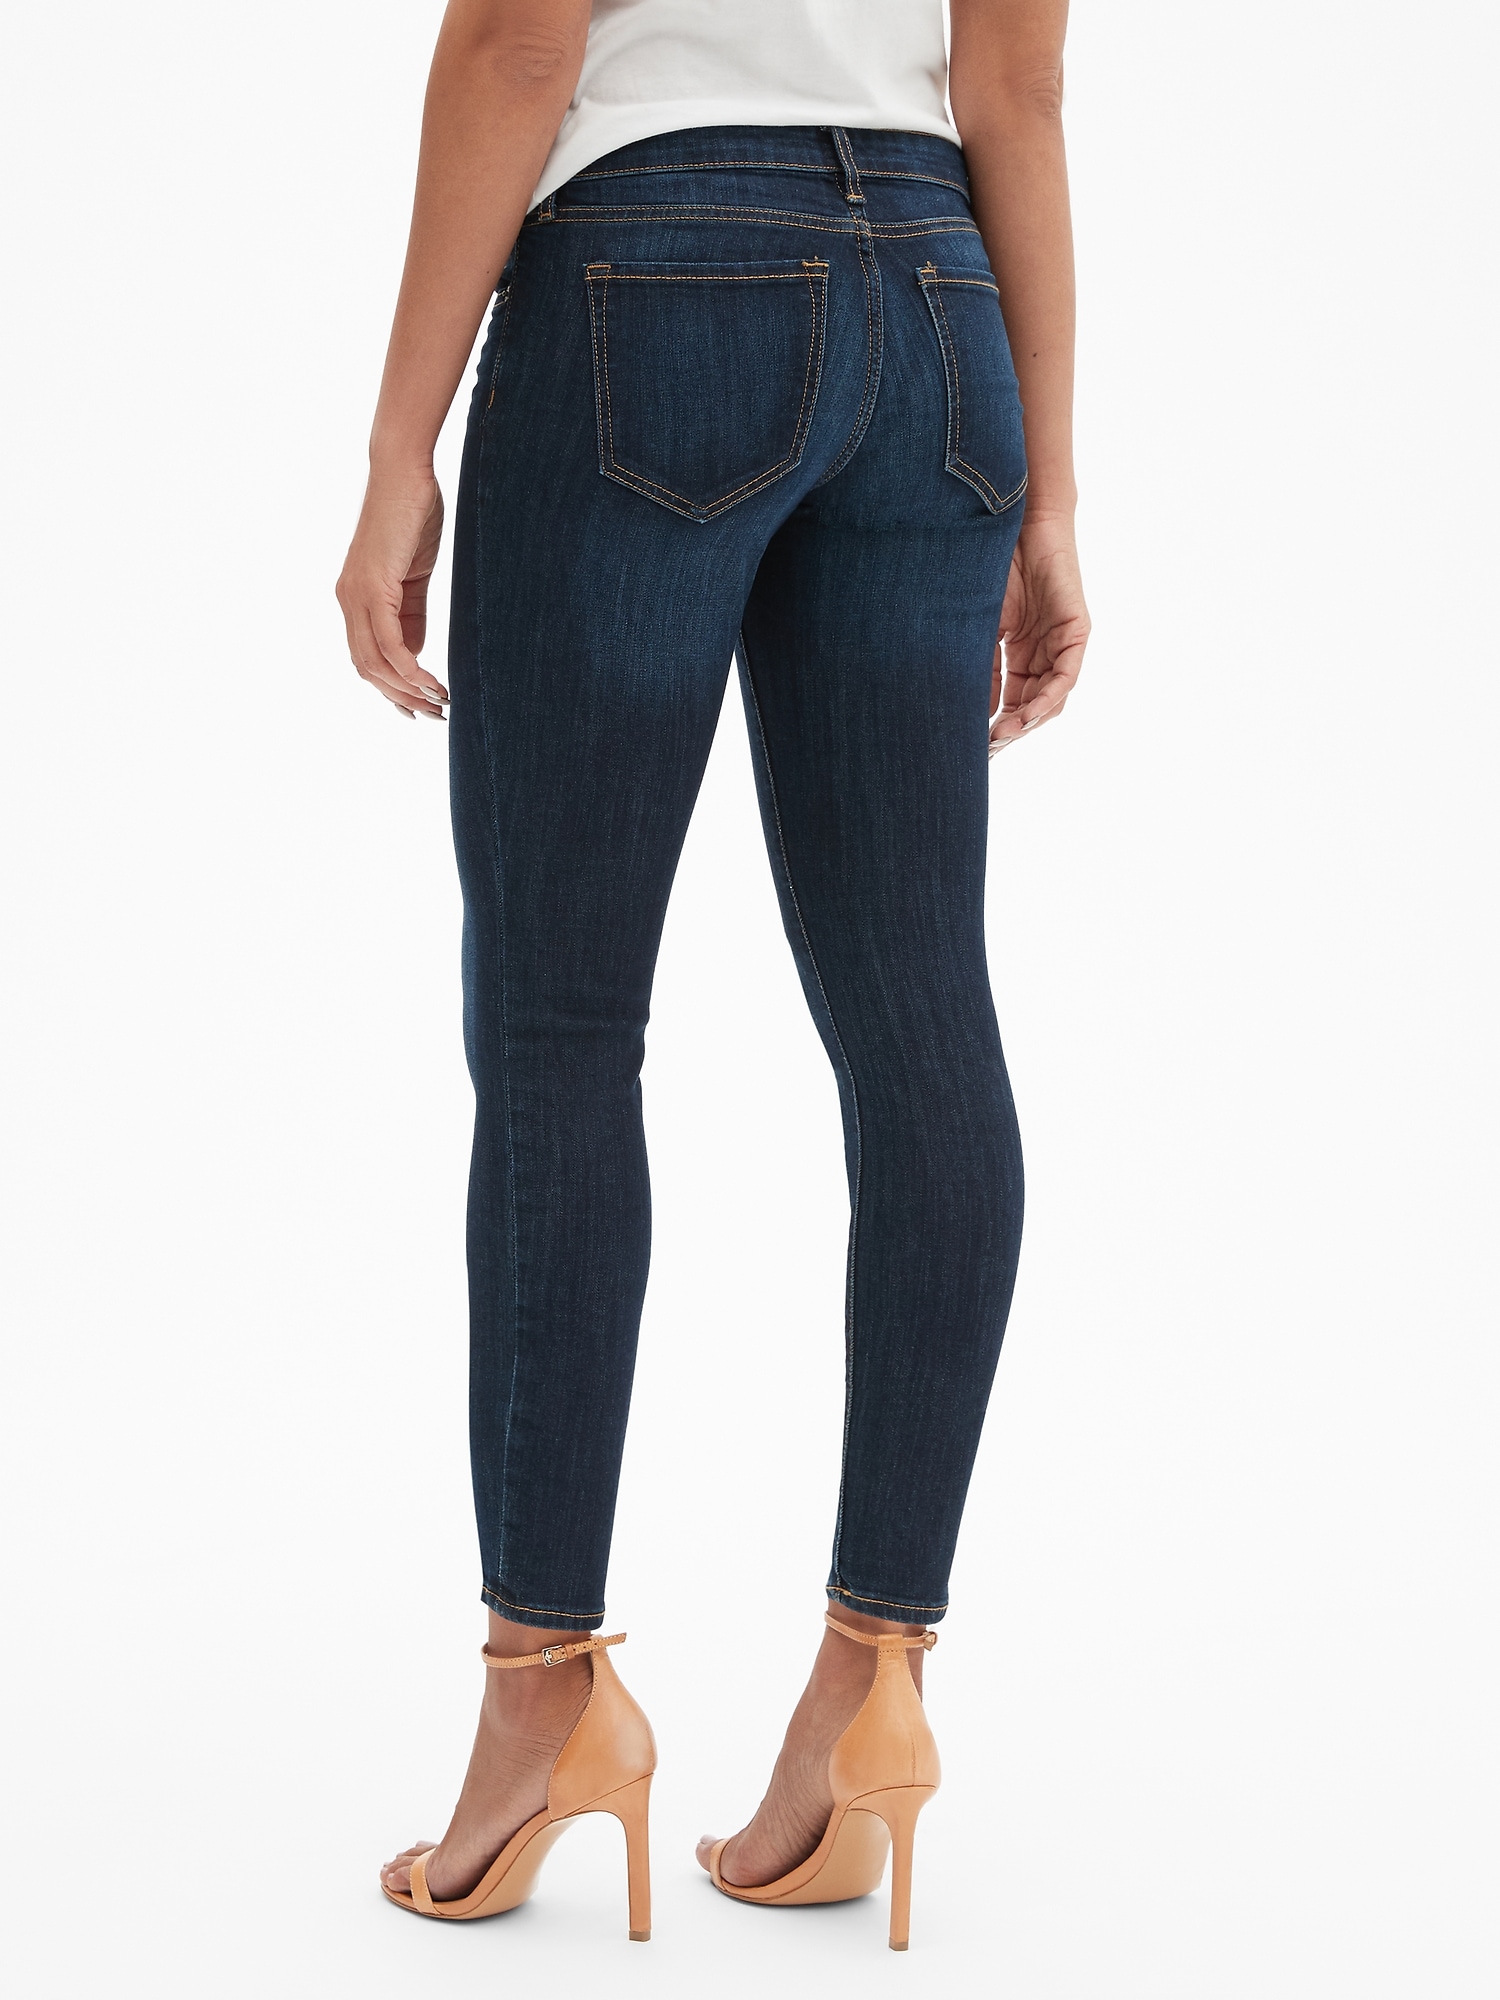 gap legging skimmer jeans review